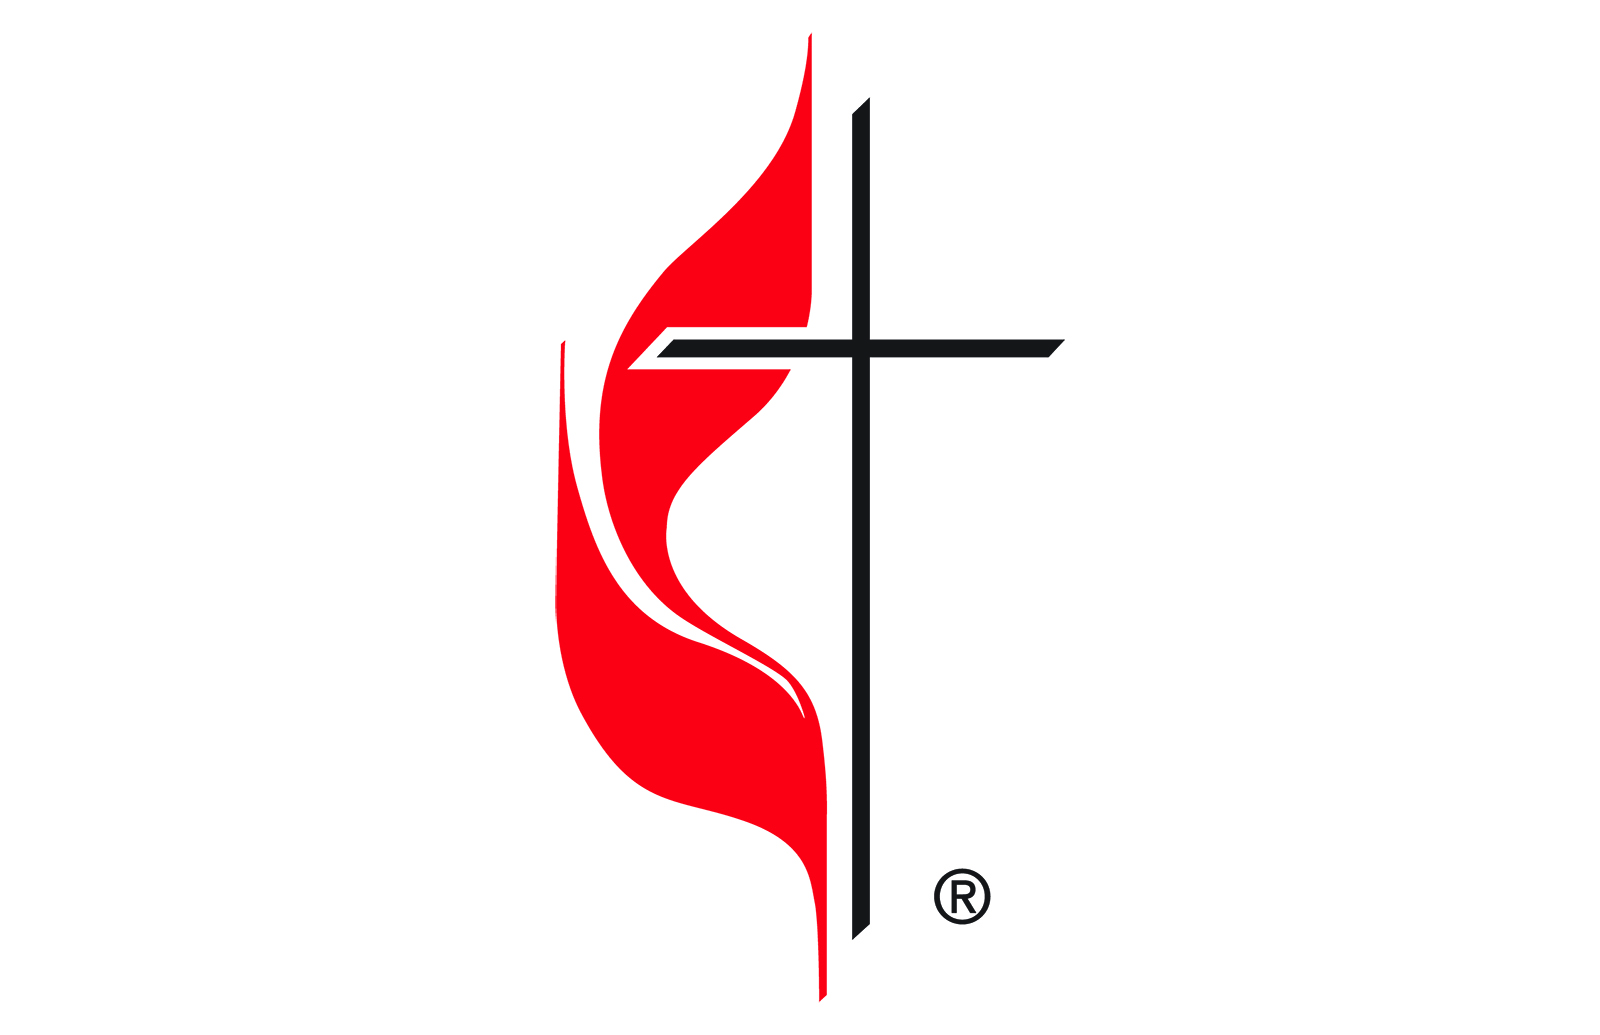 La Cruz y la Llama es el logotipo oficial de la Iglesia Metodista Unida. Imagen cortesía de la Iglesia Metodista Unida